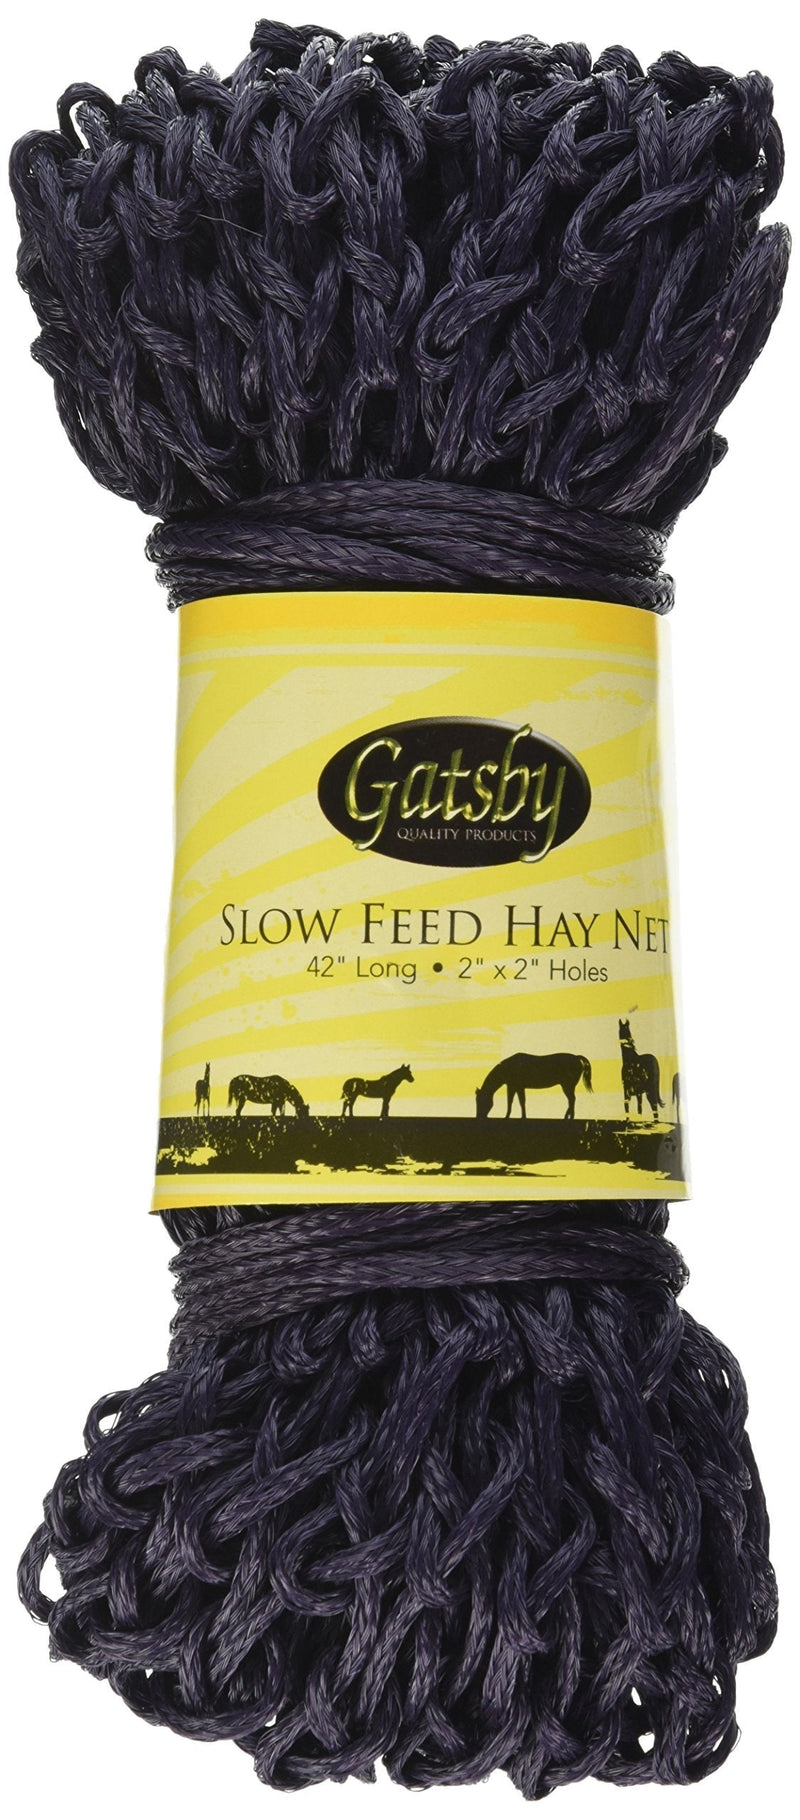 [Australia] - GATSBY LEATHER COMPANY Slow Feed Hay Net 284192 